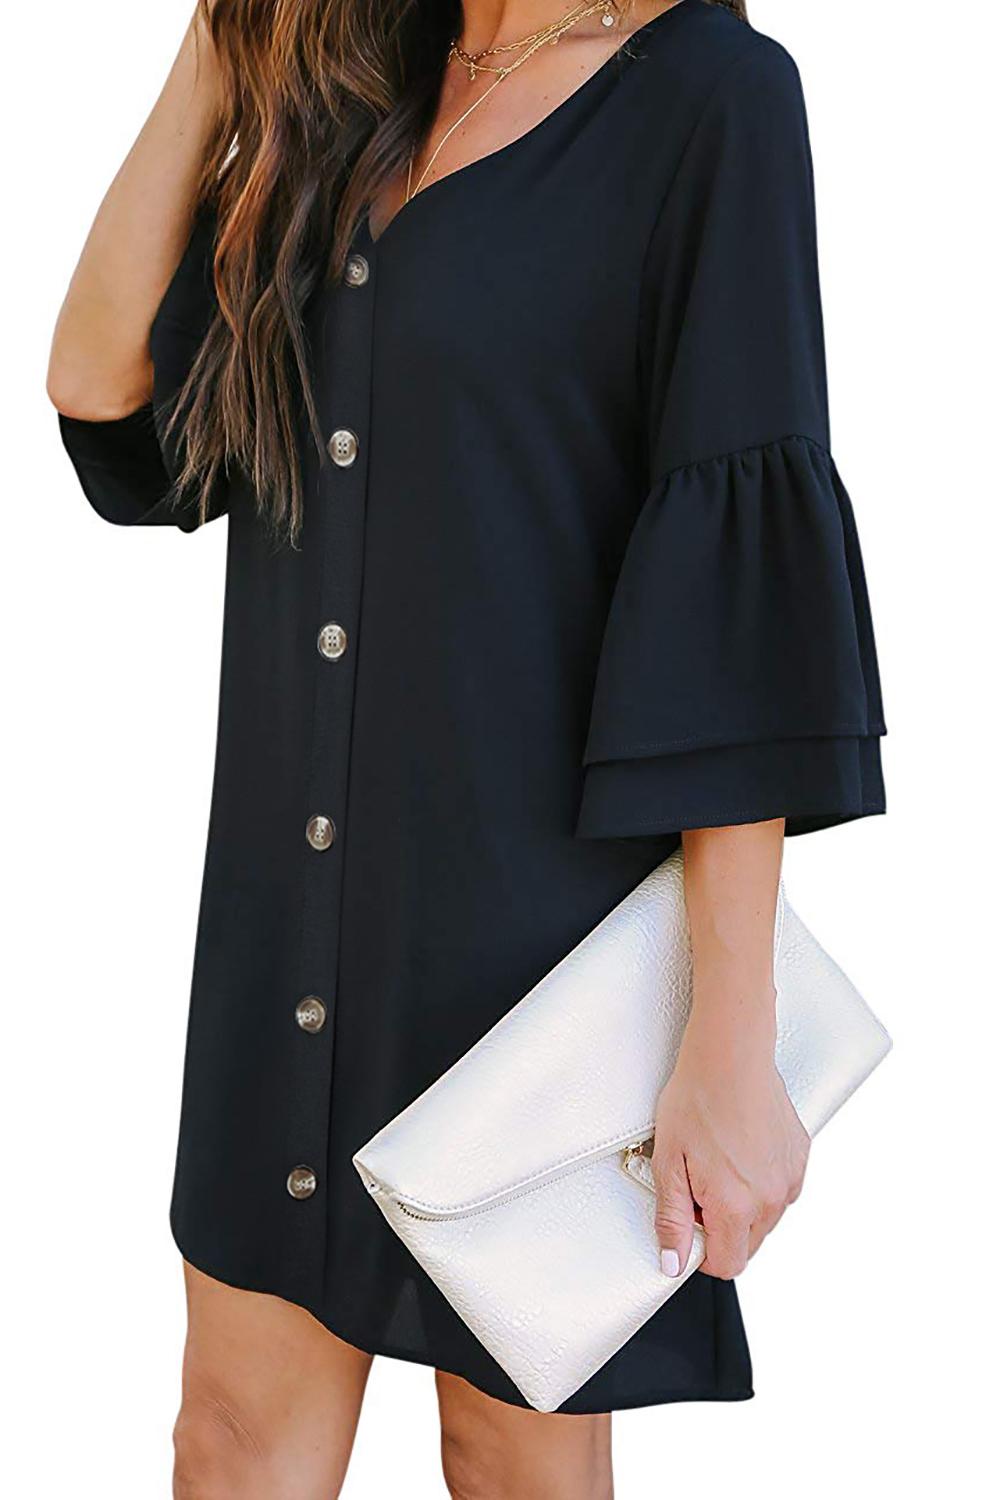 μαύρο φόρεμα με κουμπιά & V ντεκολτέ ALFREDA - Amely.gr - Γυναικεία ρούχα - Φορέματα, ολόσωμες φόρμες